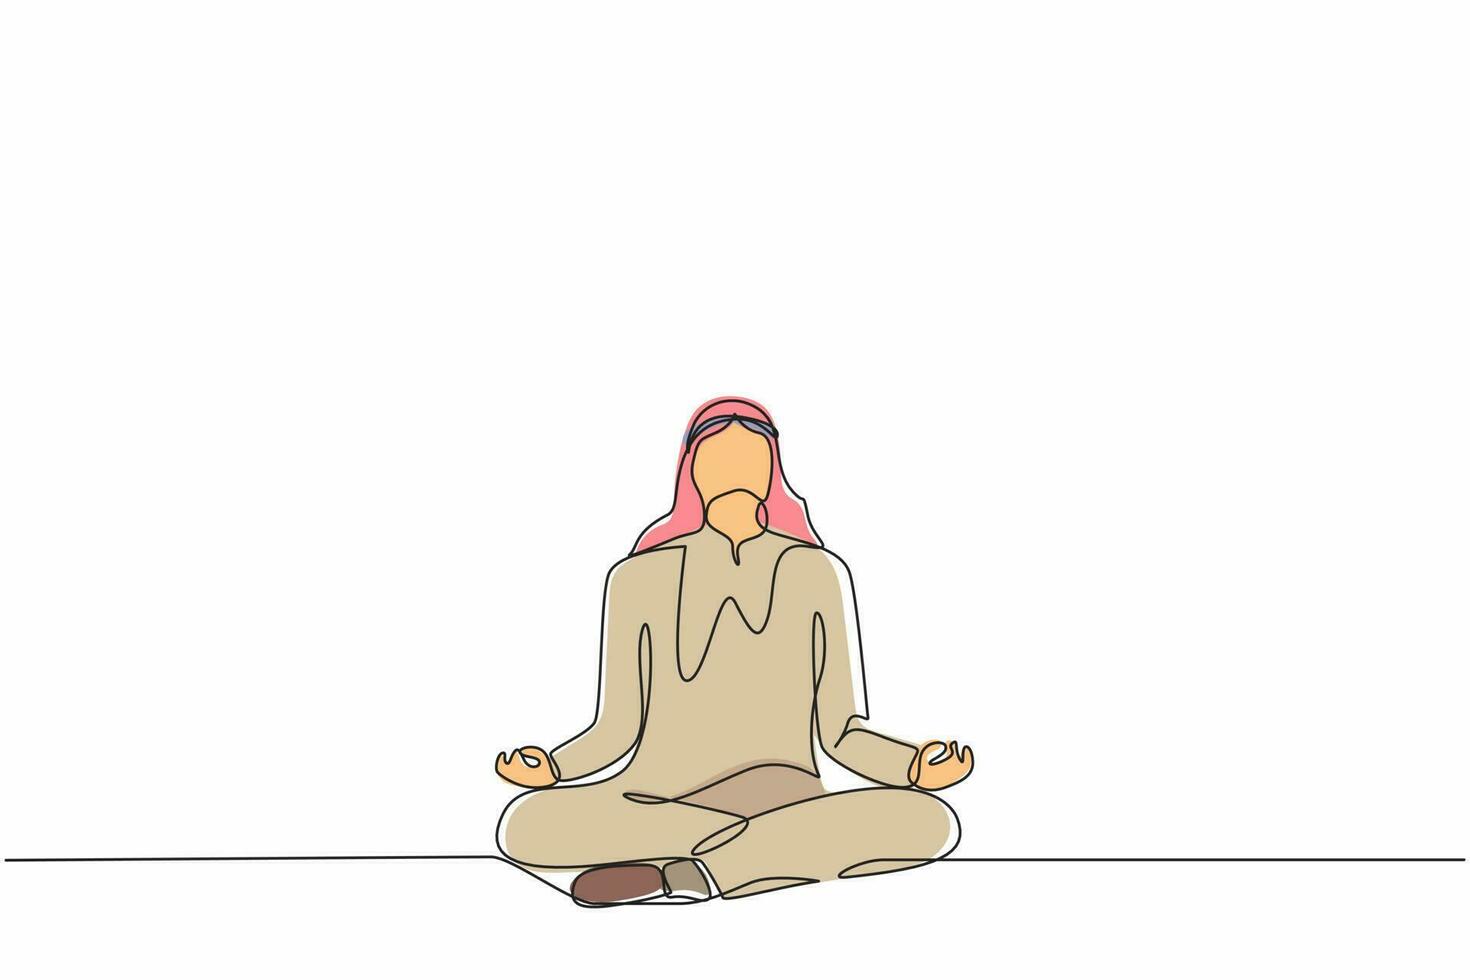 einzelne durchgehende strichzeichnung arabischer geschäftsmann, der yoga macht. Büroangestellter sitzt in Yoga-Pose, Meditation, Entspannung, Beruhigung und Stressbewältigung. eine linie zeichnen grafikdesign-vektorillustration vektor